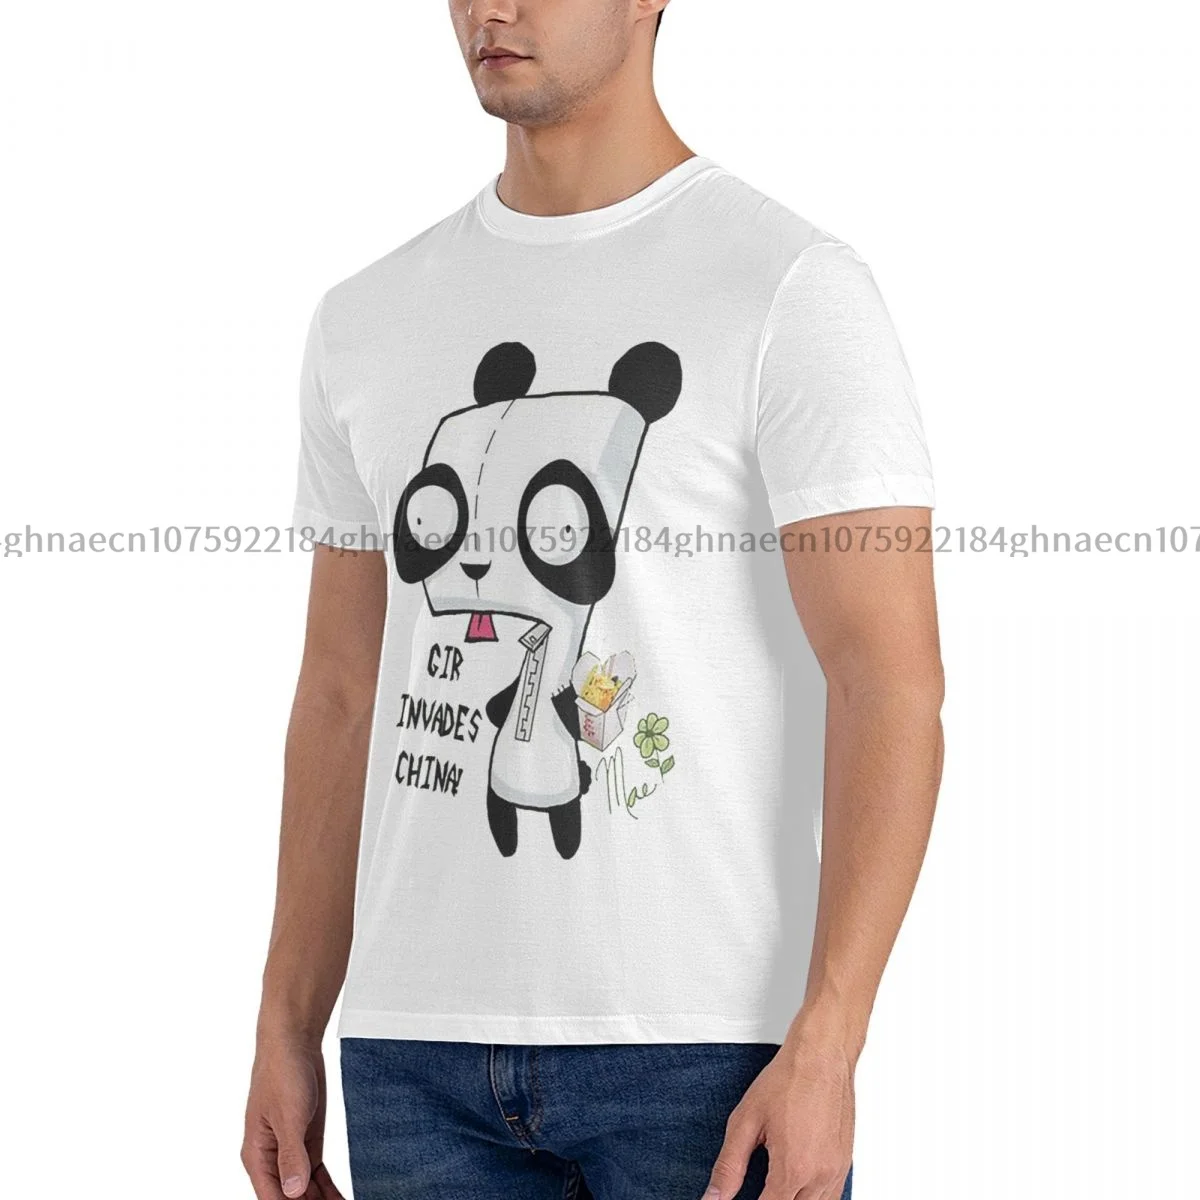 

Мужская рубашка с принтом панды, хлопковая одежда с графическим принтом Zim, повседневные футболки с коротким рукавом, футболка с идеей подарка